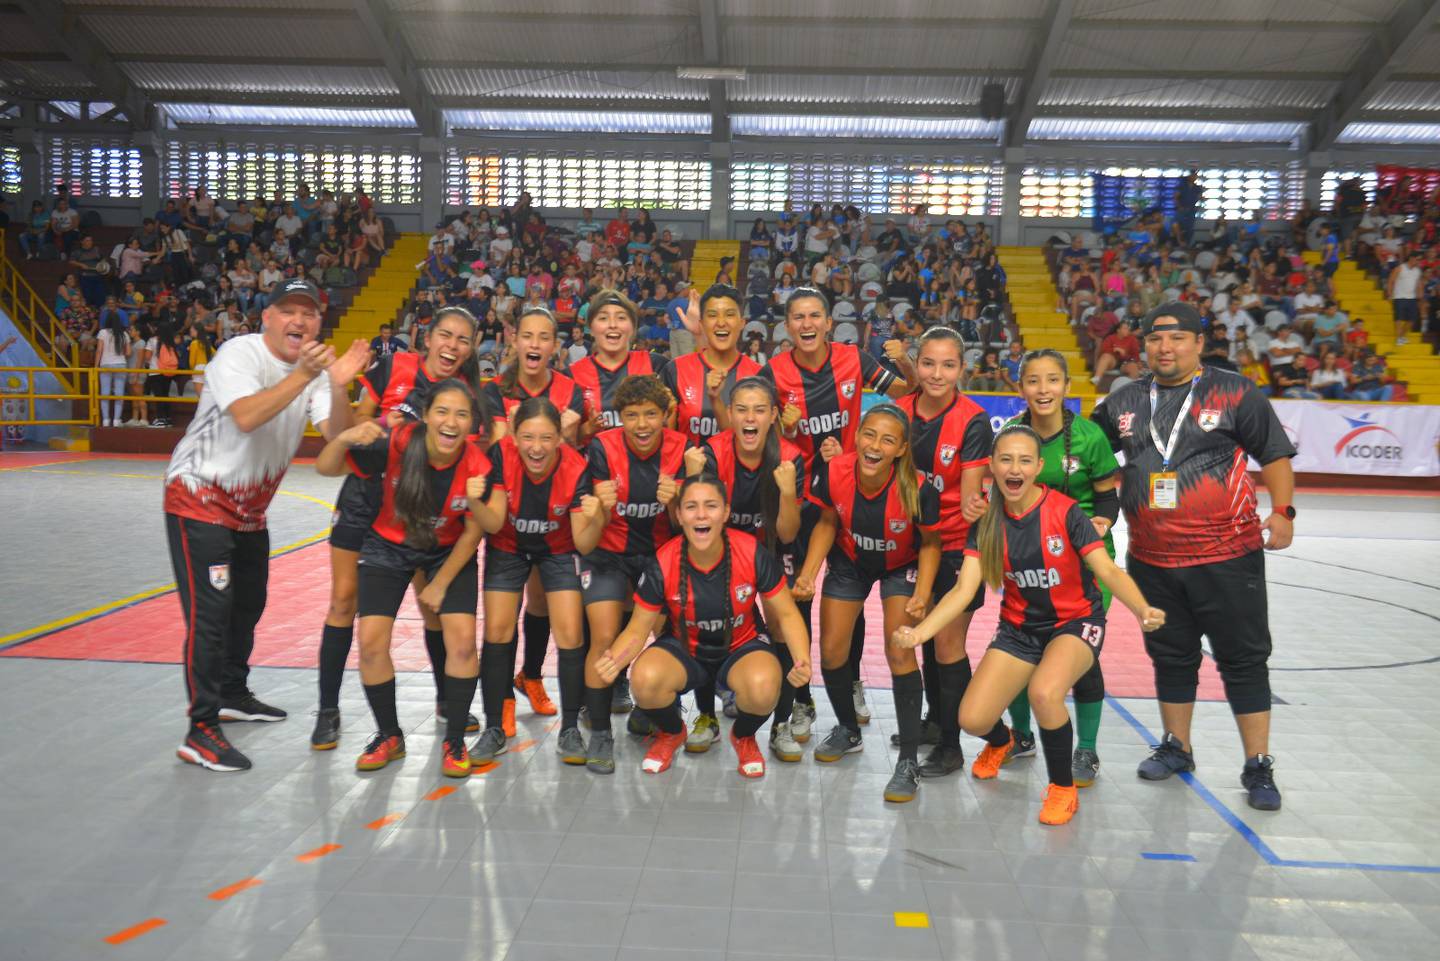 Alajuela se consagró campeón del futsal femenino de Juegos Deportivos Nacionales por segunda ocasión en su historia,  tras derrotar 4-3 a Zarcero desde la muerte súbita de los penales luego de empatar a un gol en la gran final, disputada este miércoles a gimnasio lleno en el Polideportivo Monserrat.